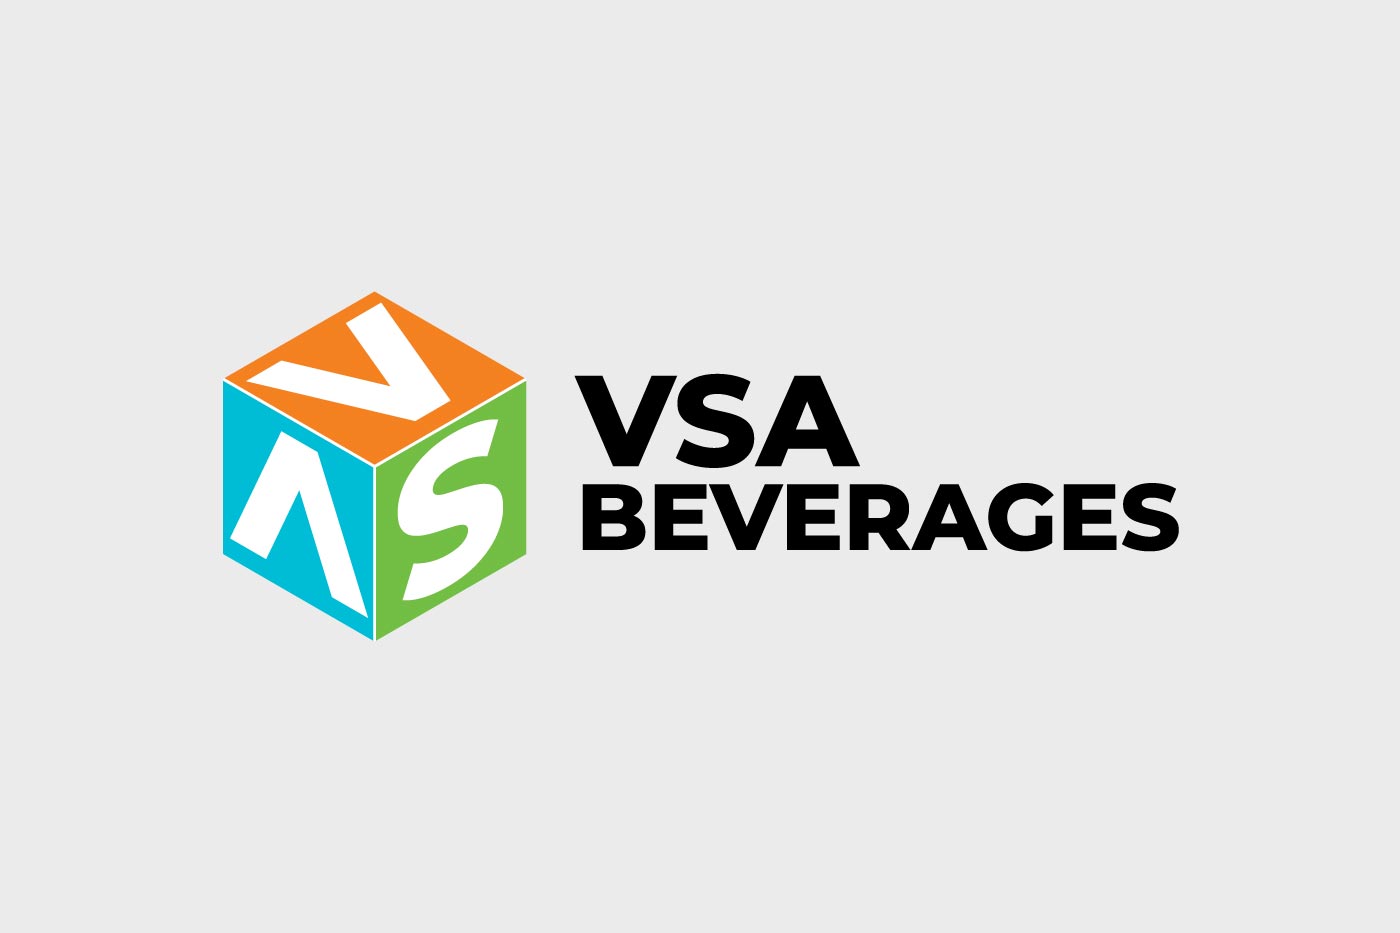 VSA Beverages